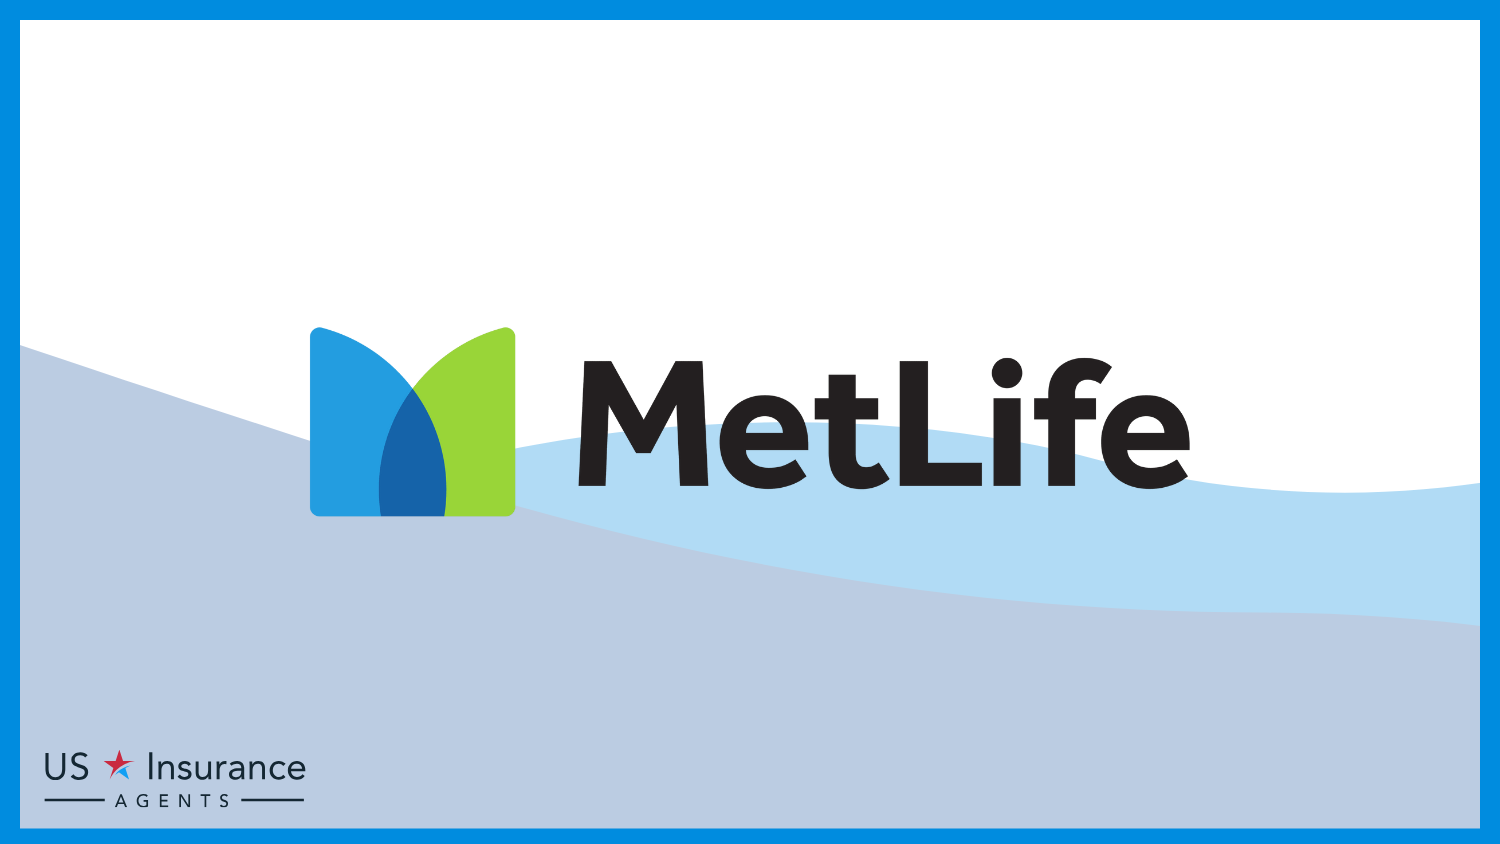 MetLife: Best Life Insurance for Teachers